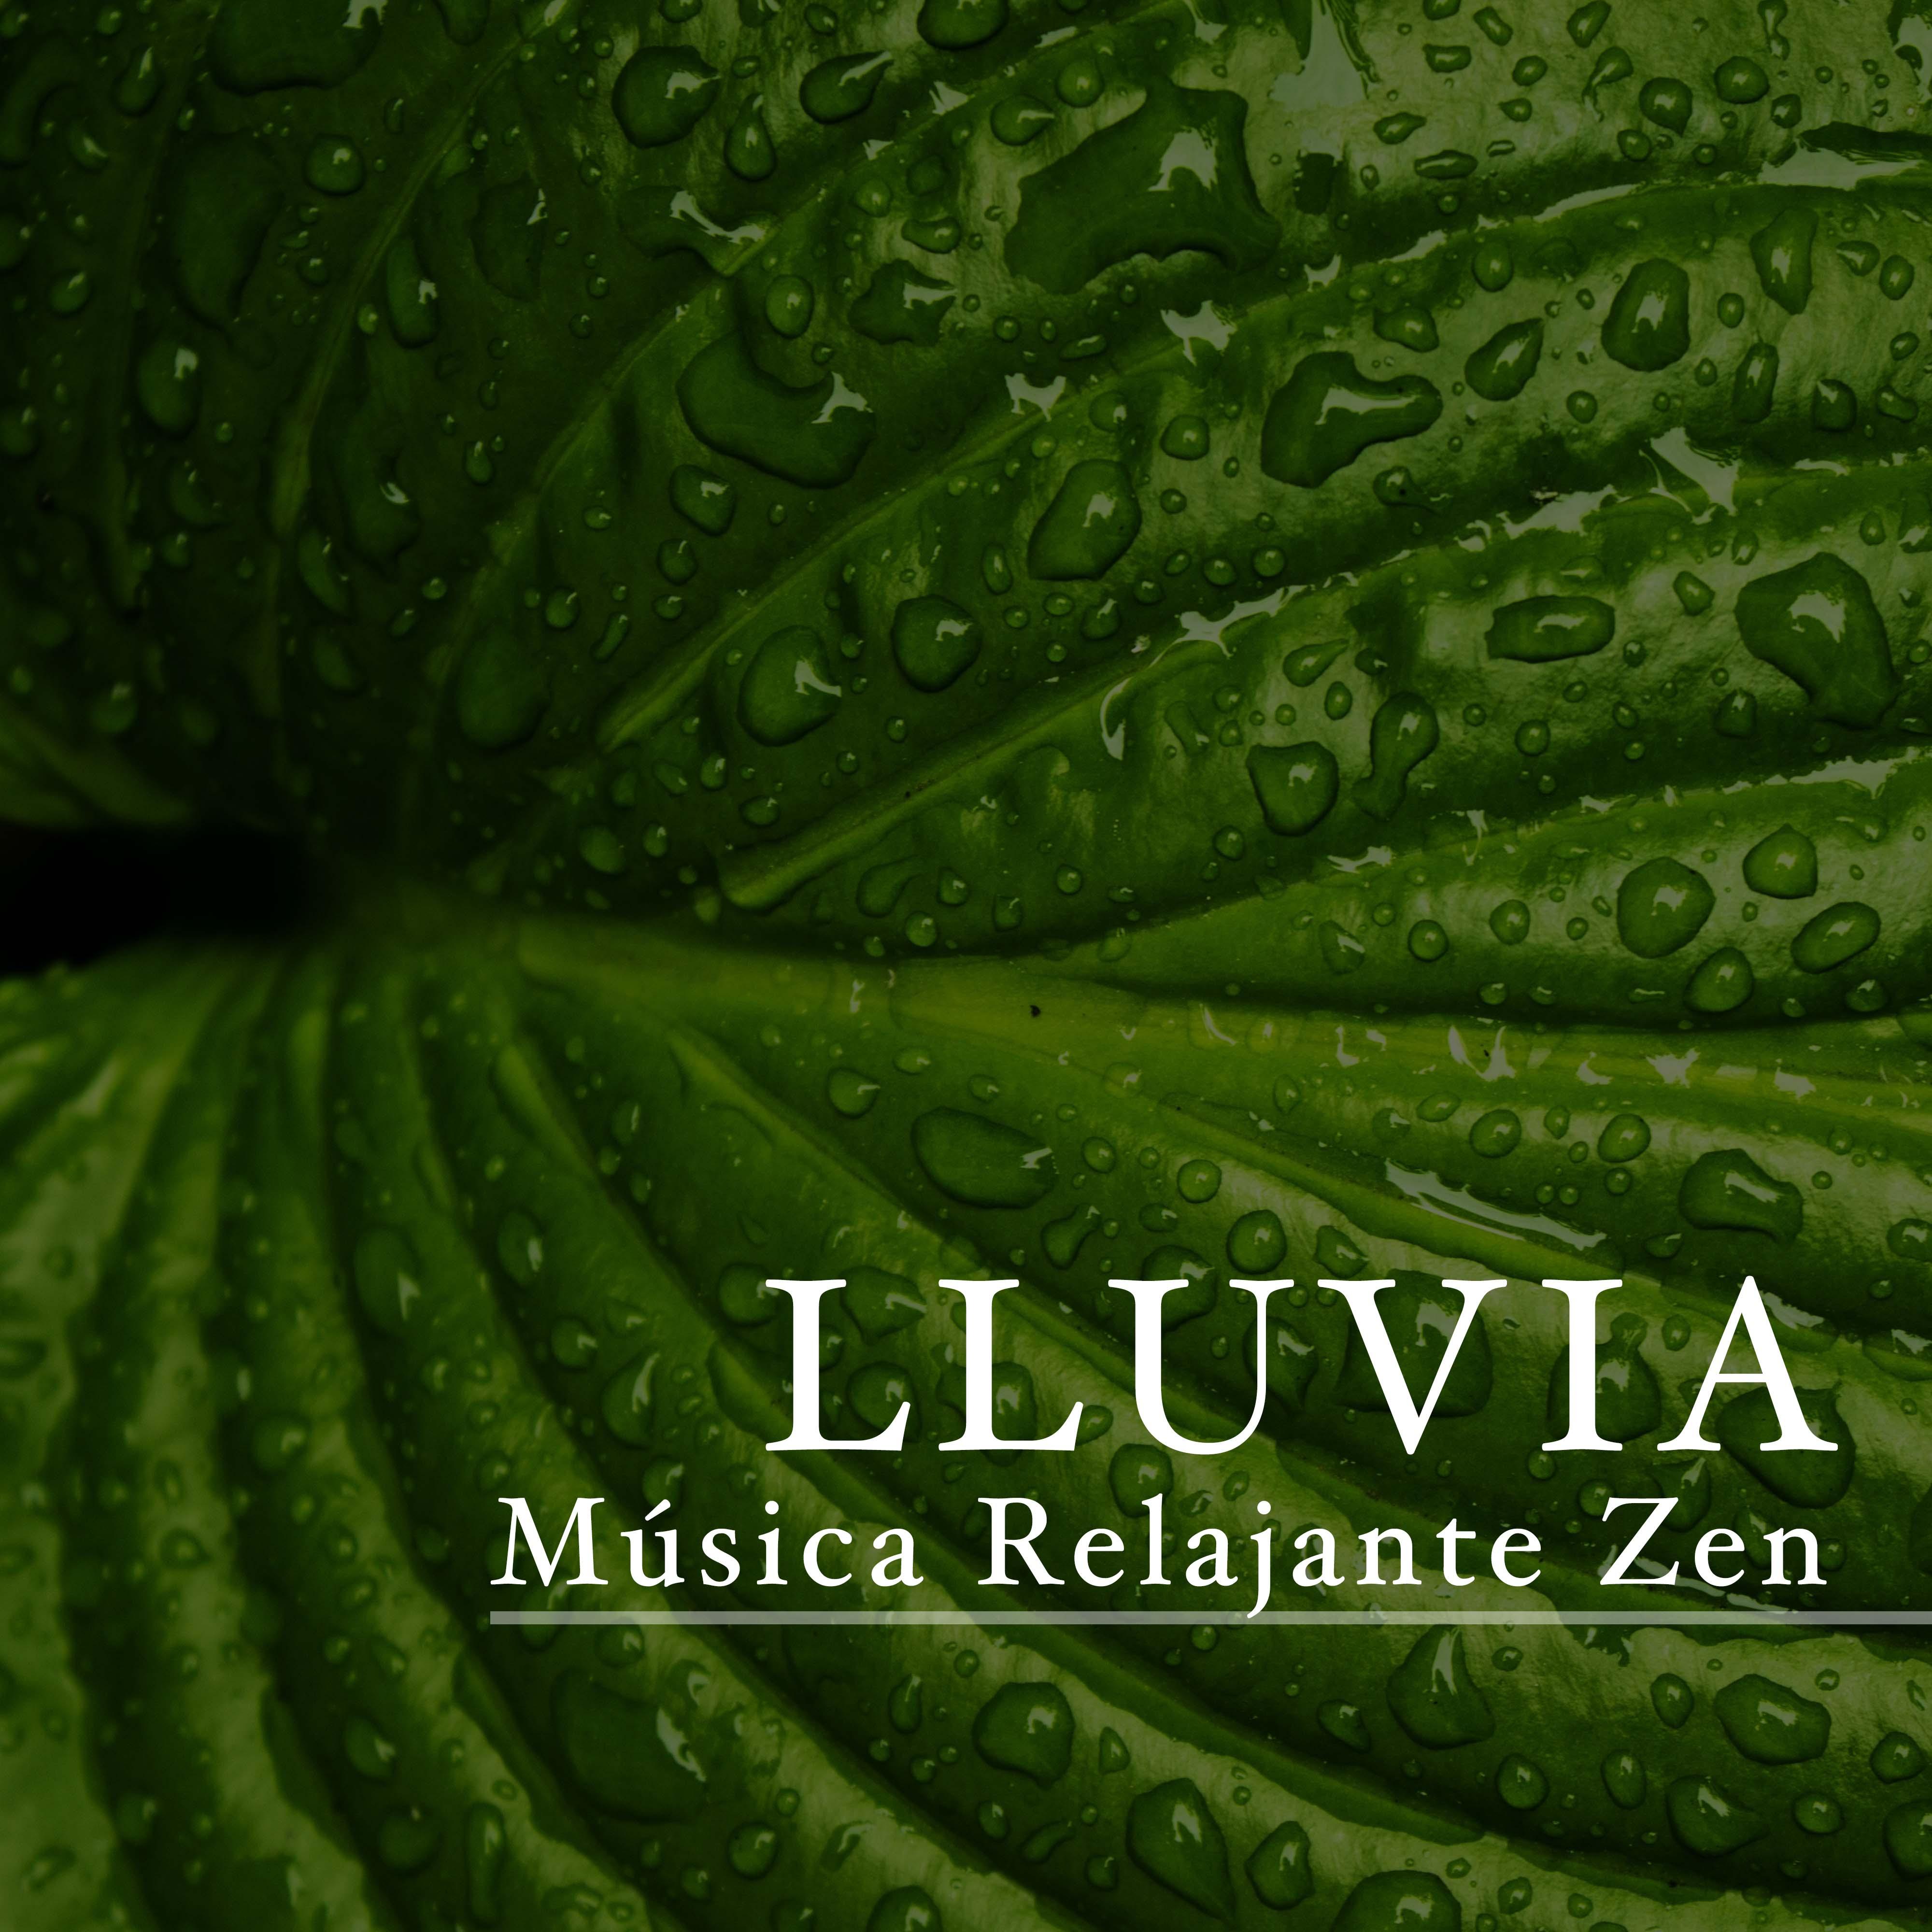 Lluvia: Musica Relajante Zen, Mu sica de Relajacion y Meditacio n